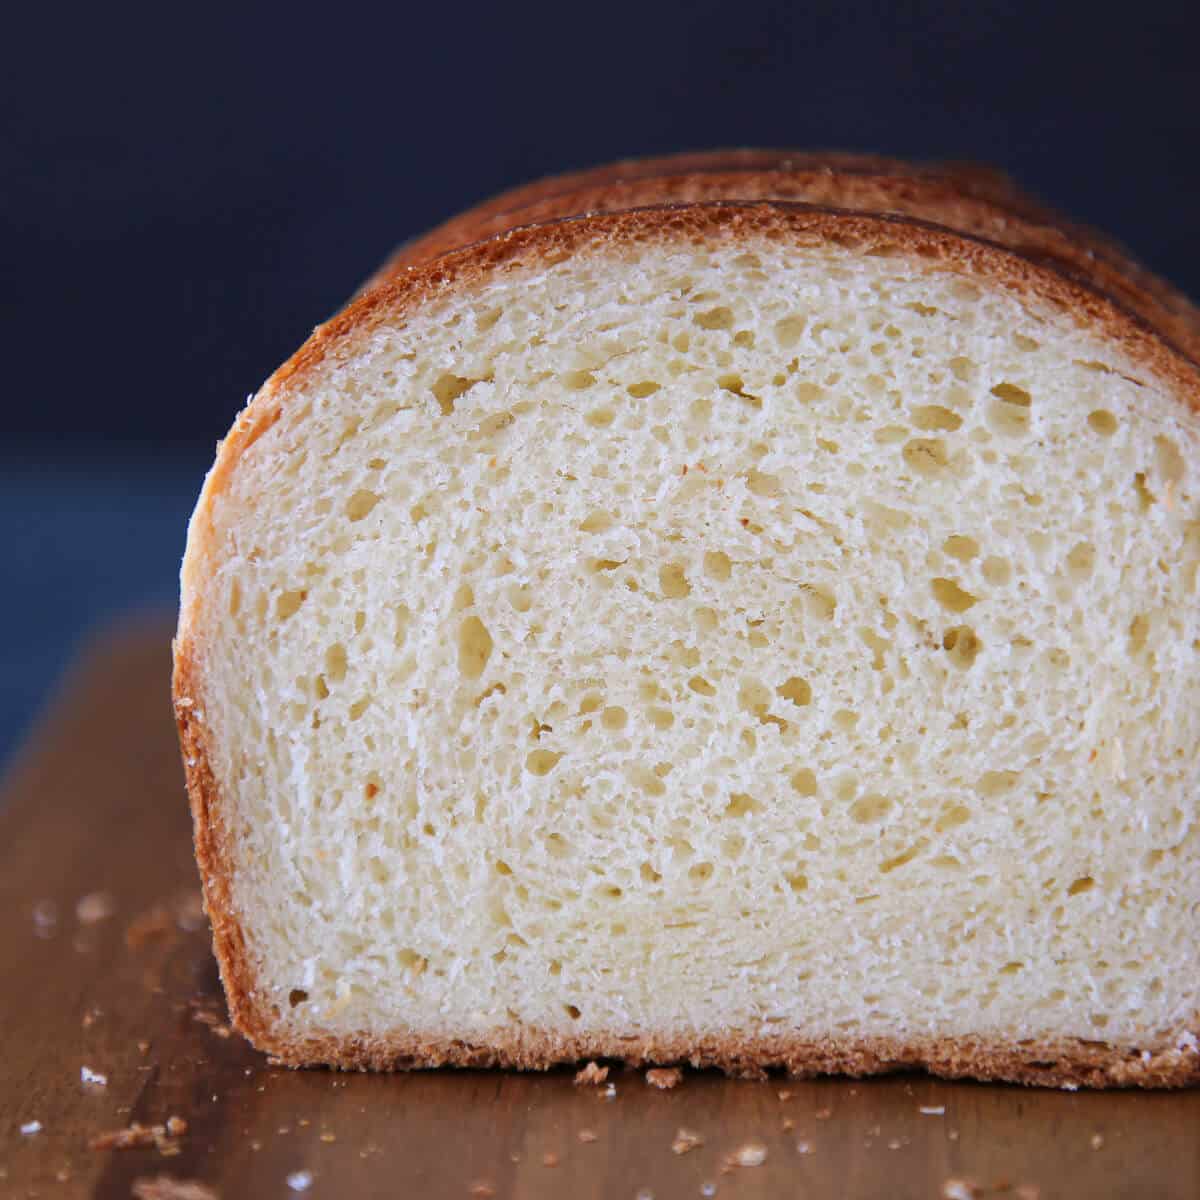 Brioche Bread close up of interior texture